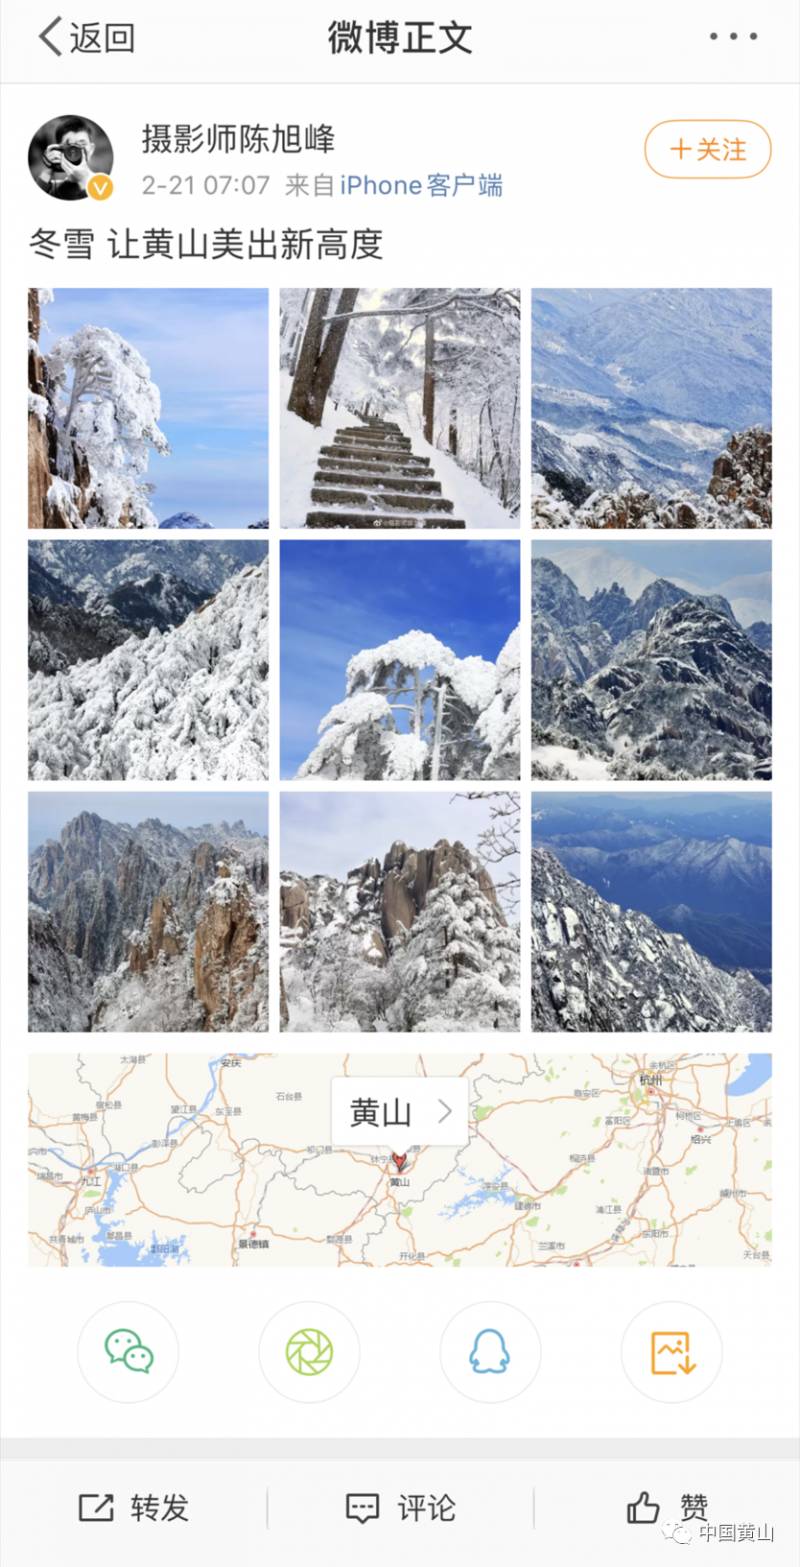 黄山的微博，冬日雪景，美不胜收，转发点赞！